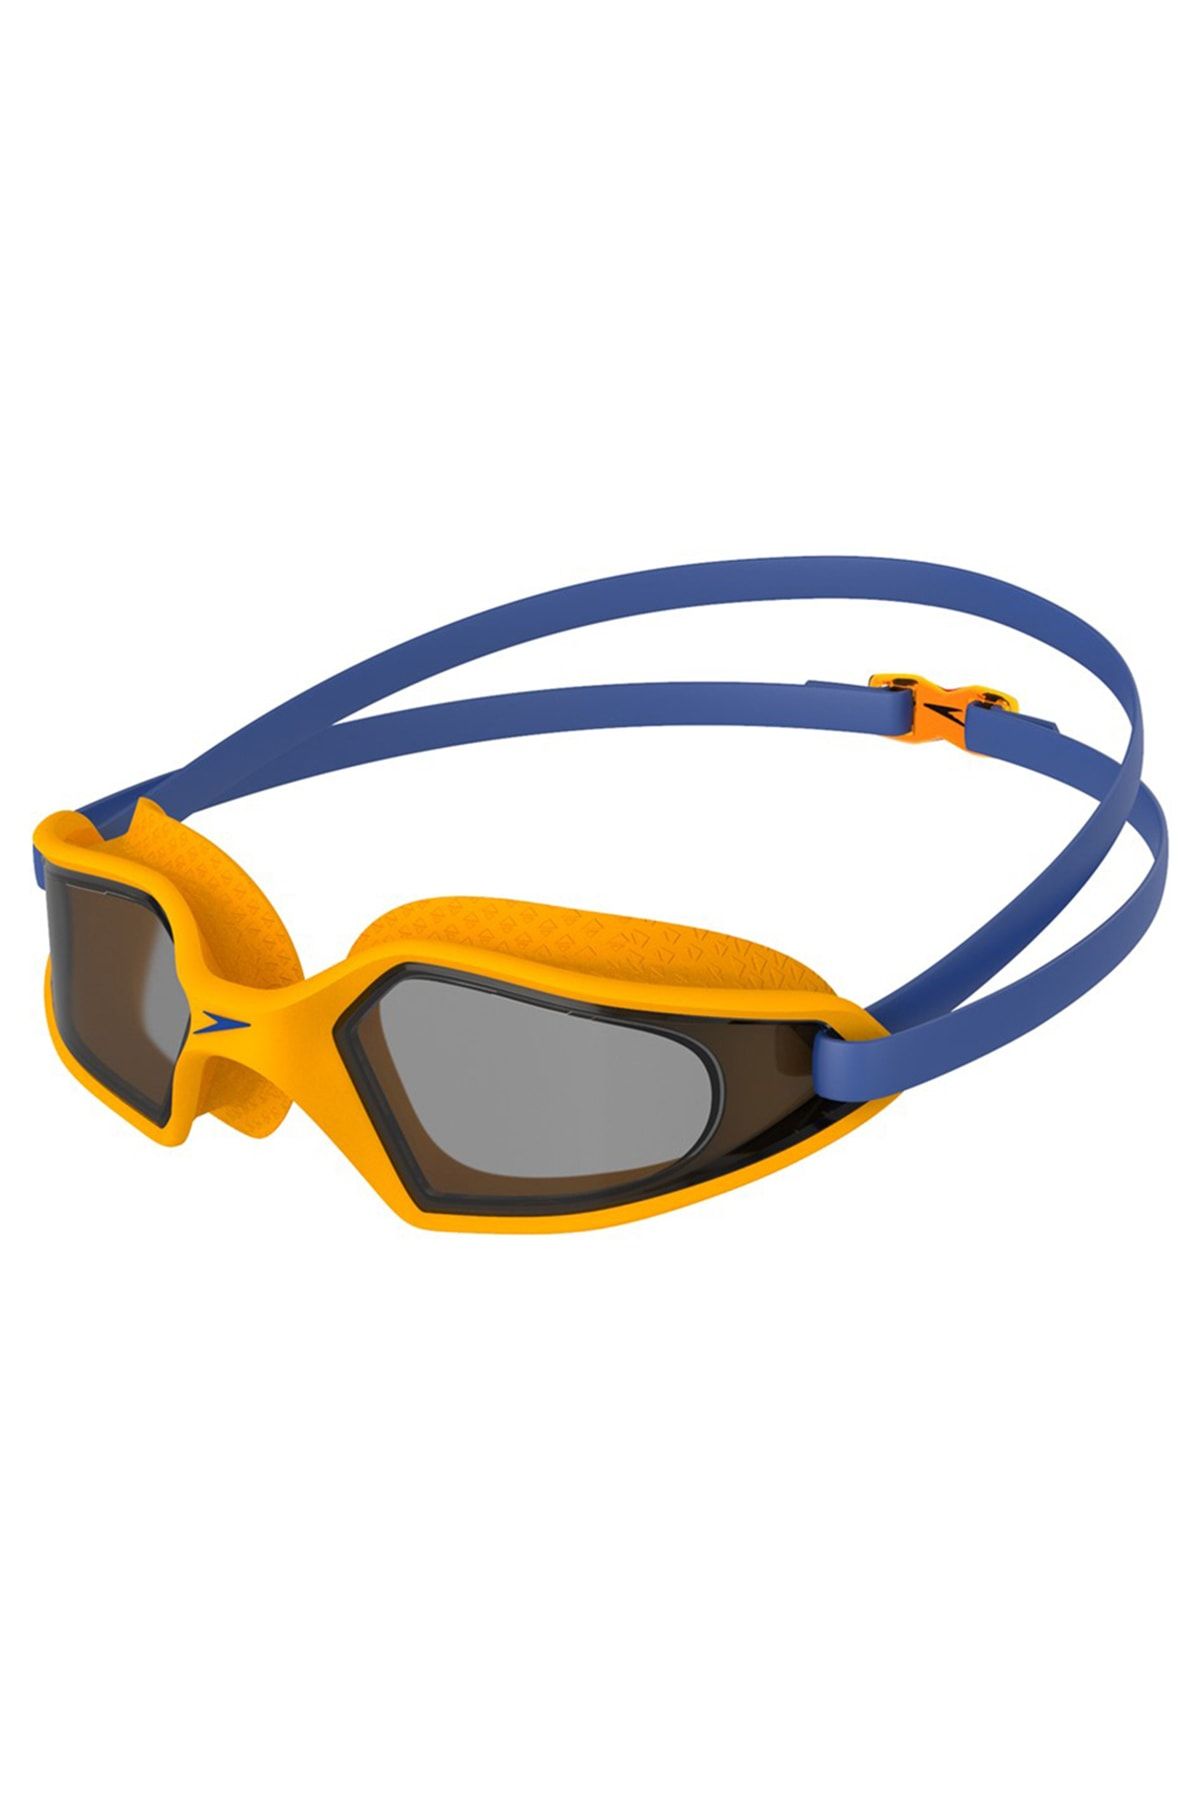 SPEEDO 8-12270d659 Hydropulse Çocuk Yüzücü Gözlüğü